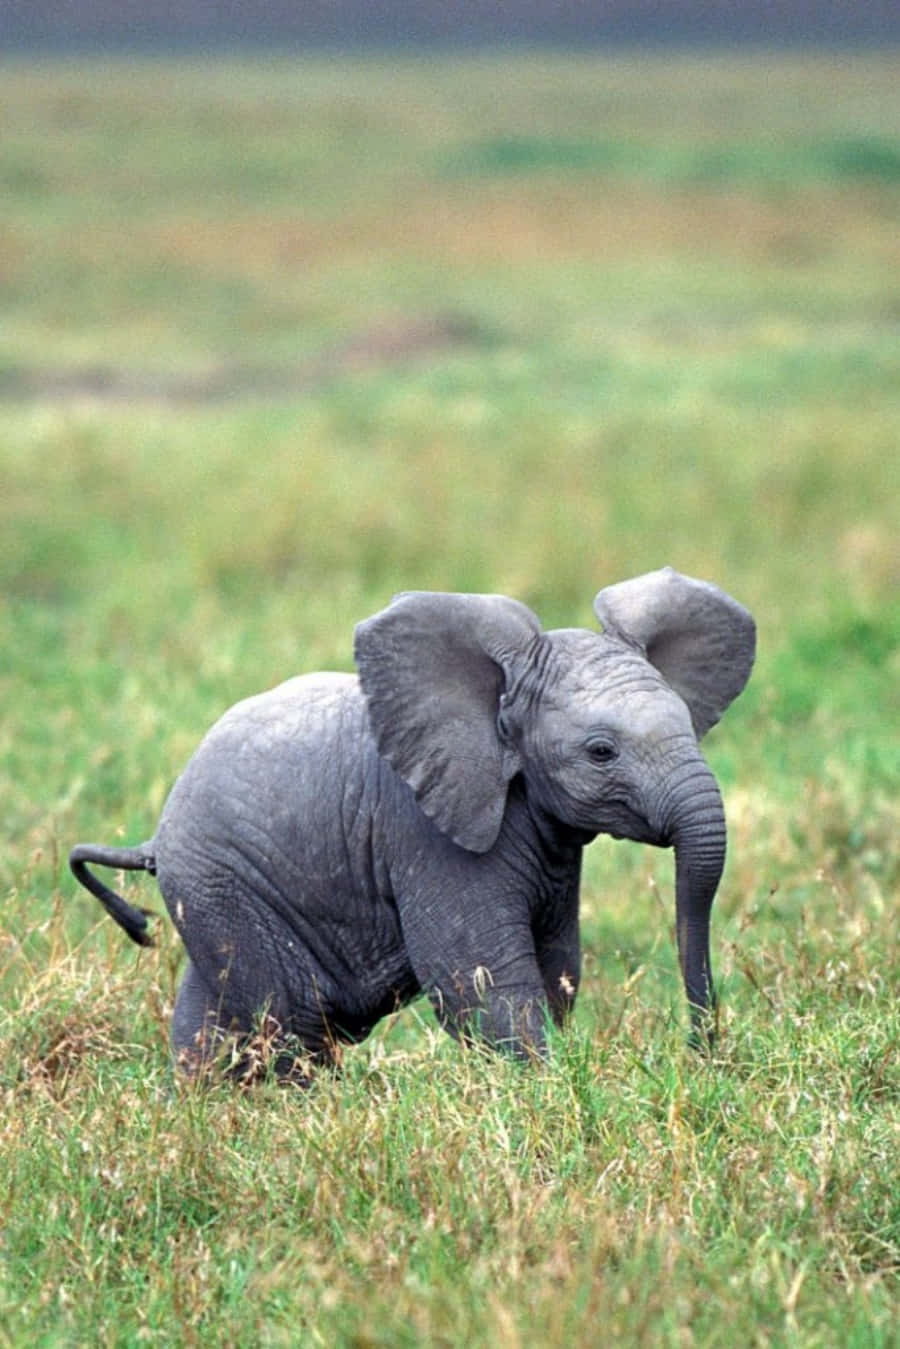 ¡miraqué Adorable Es Este Elefante!